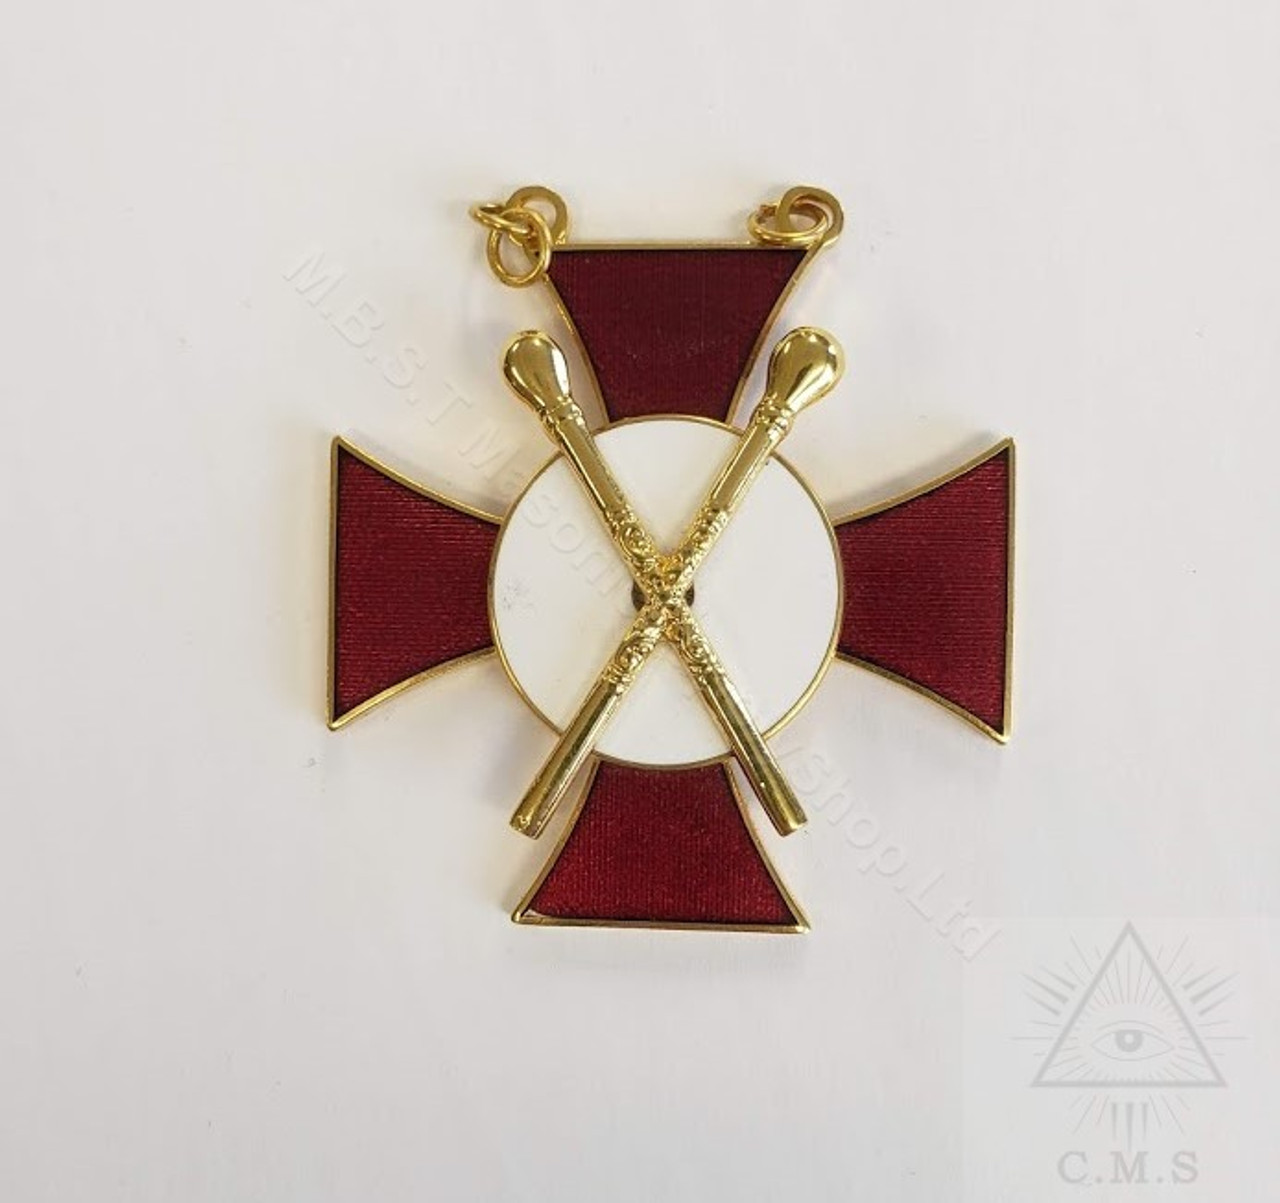 NEW masonic regalia-MASONIC JEWELS-MASONIC KNIGHTS TEMPLAR PRECEPTOR CAP BADGE 